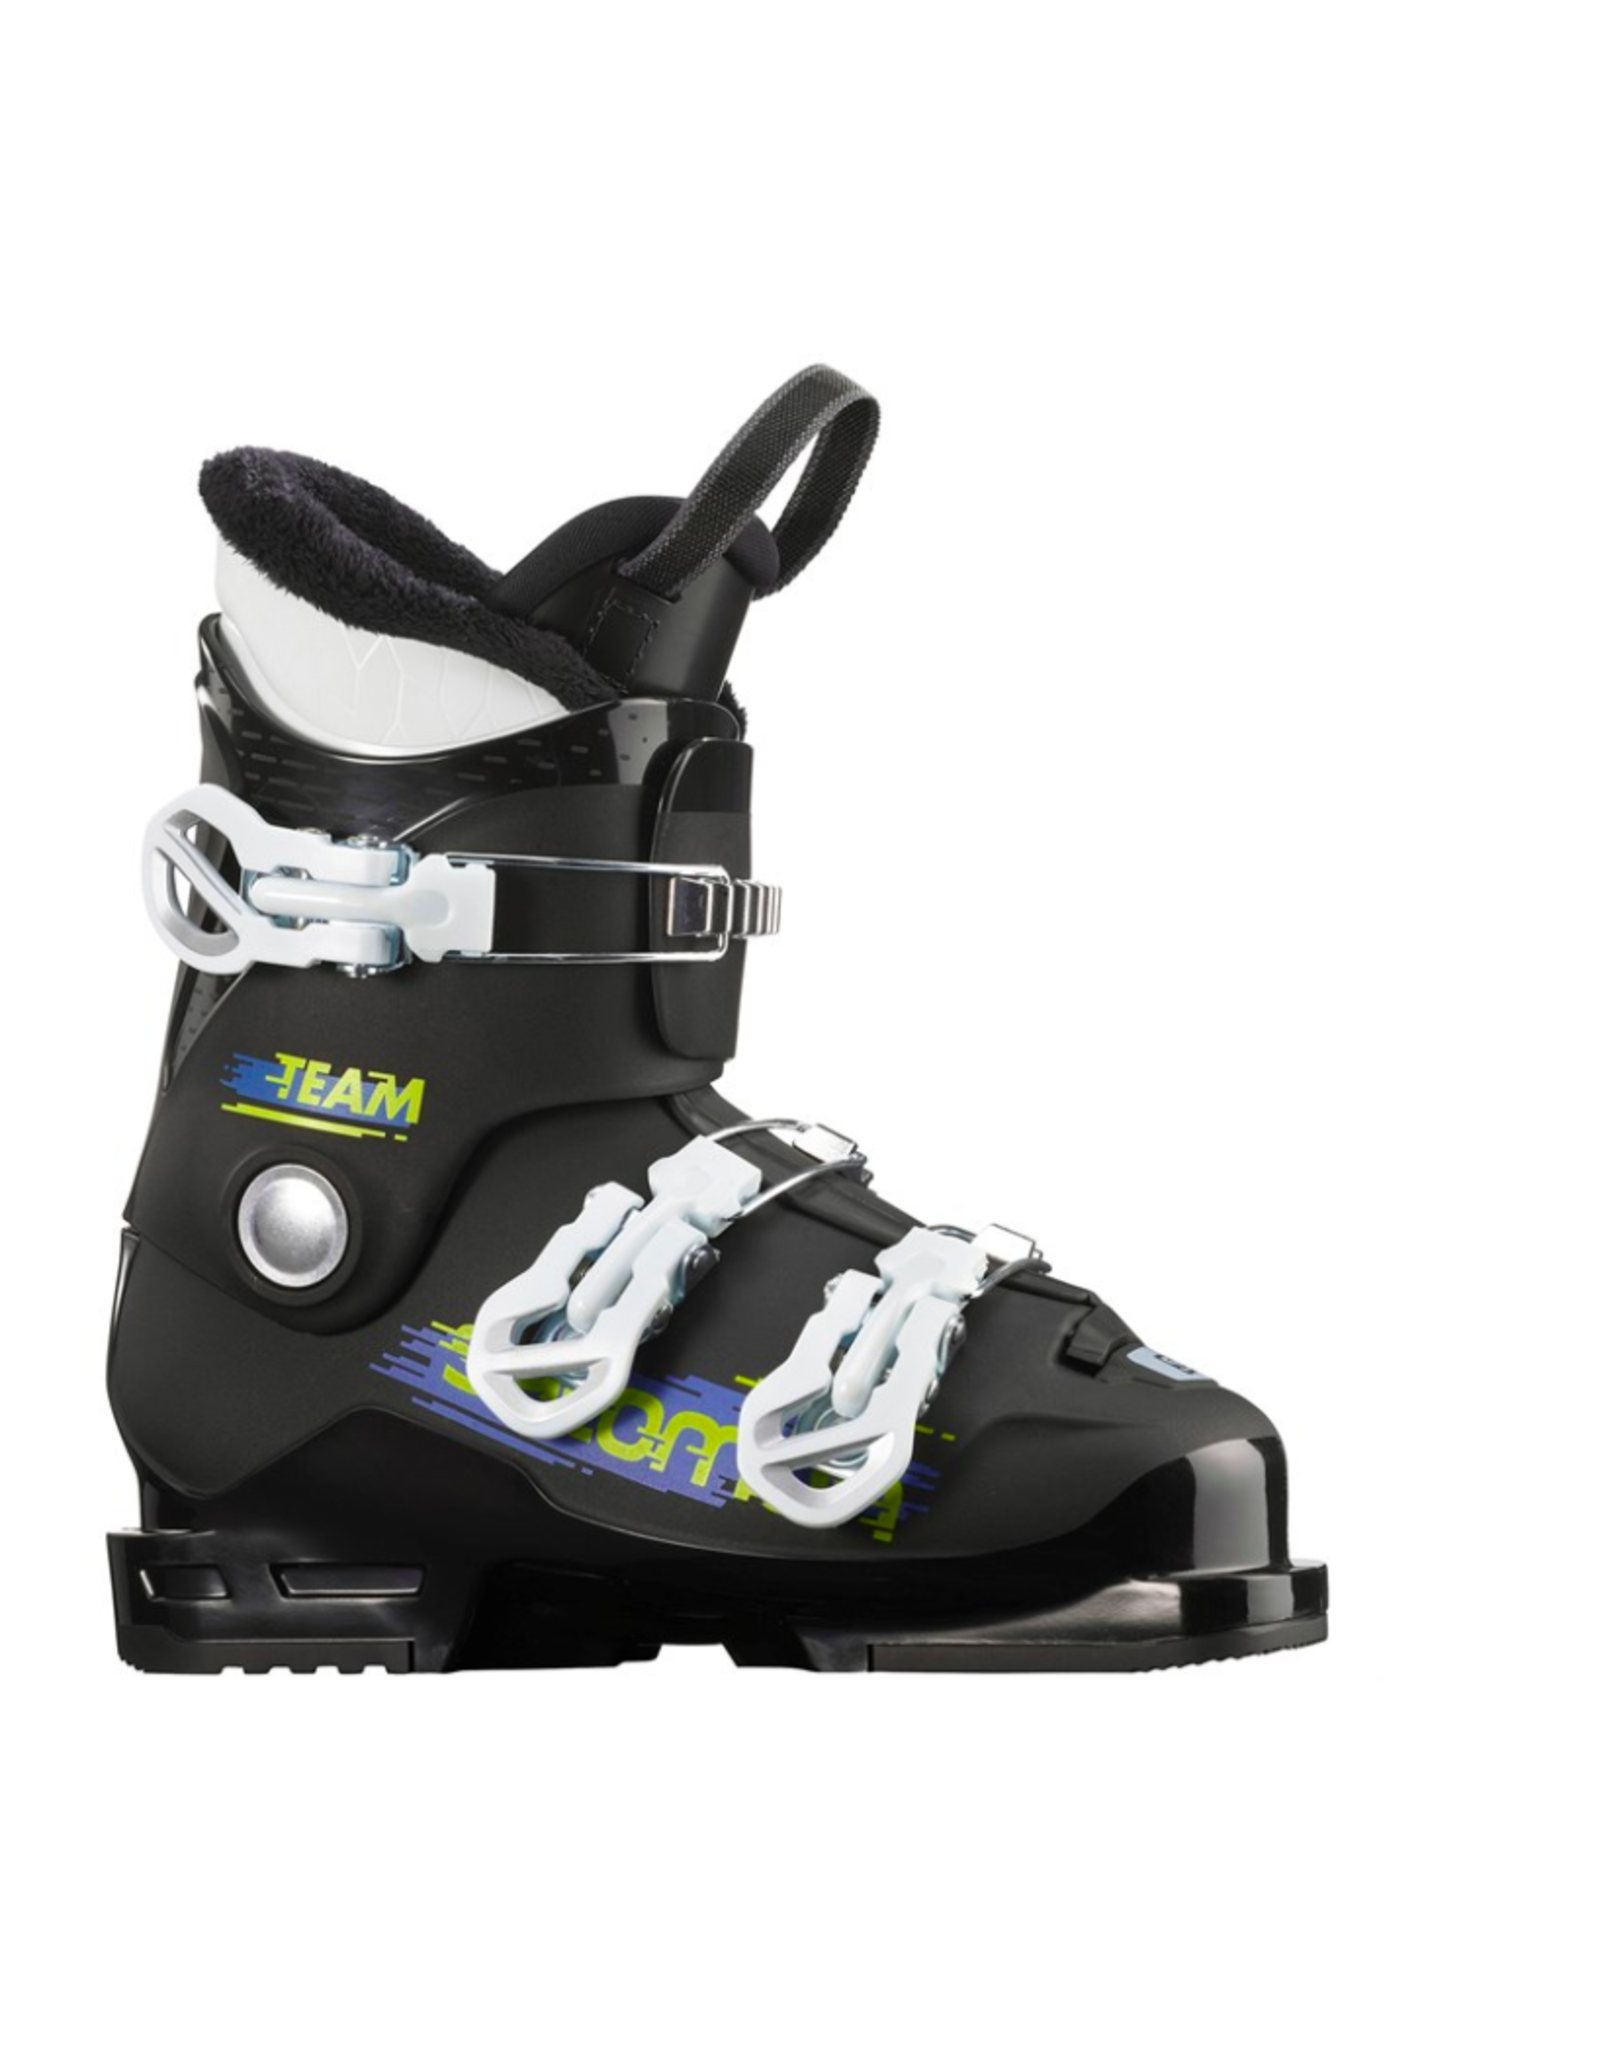 Salomon Youth Alp Team T3 Ski Boots Black/White 2022